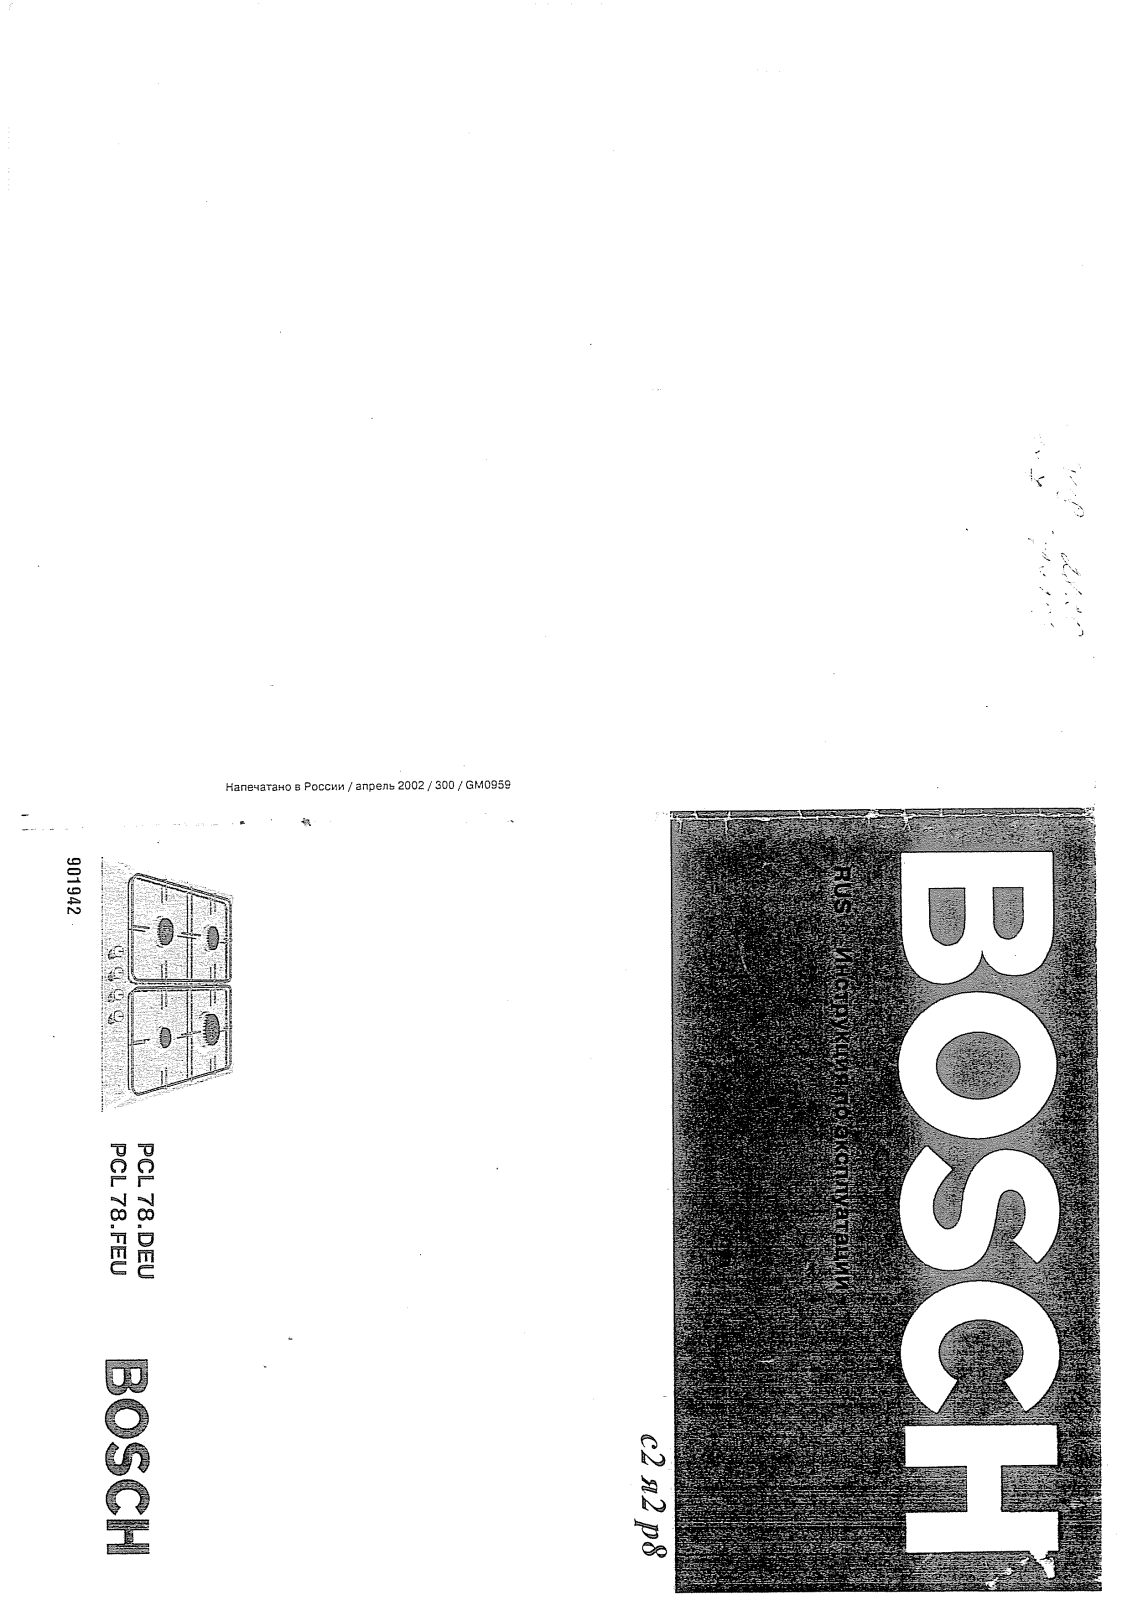 Bosch PCL 78.FEU User Manual